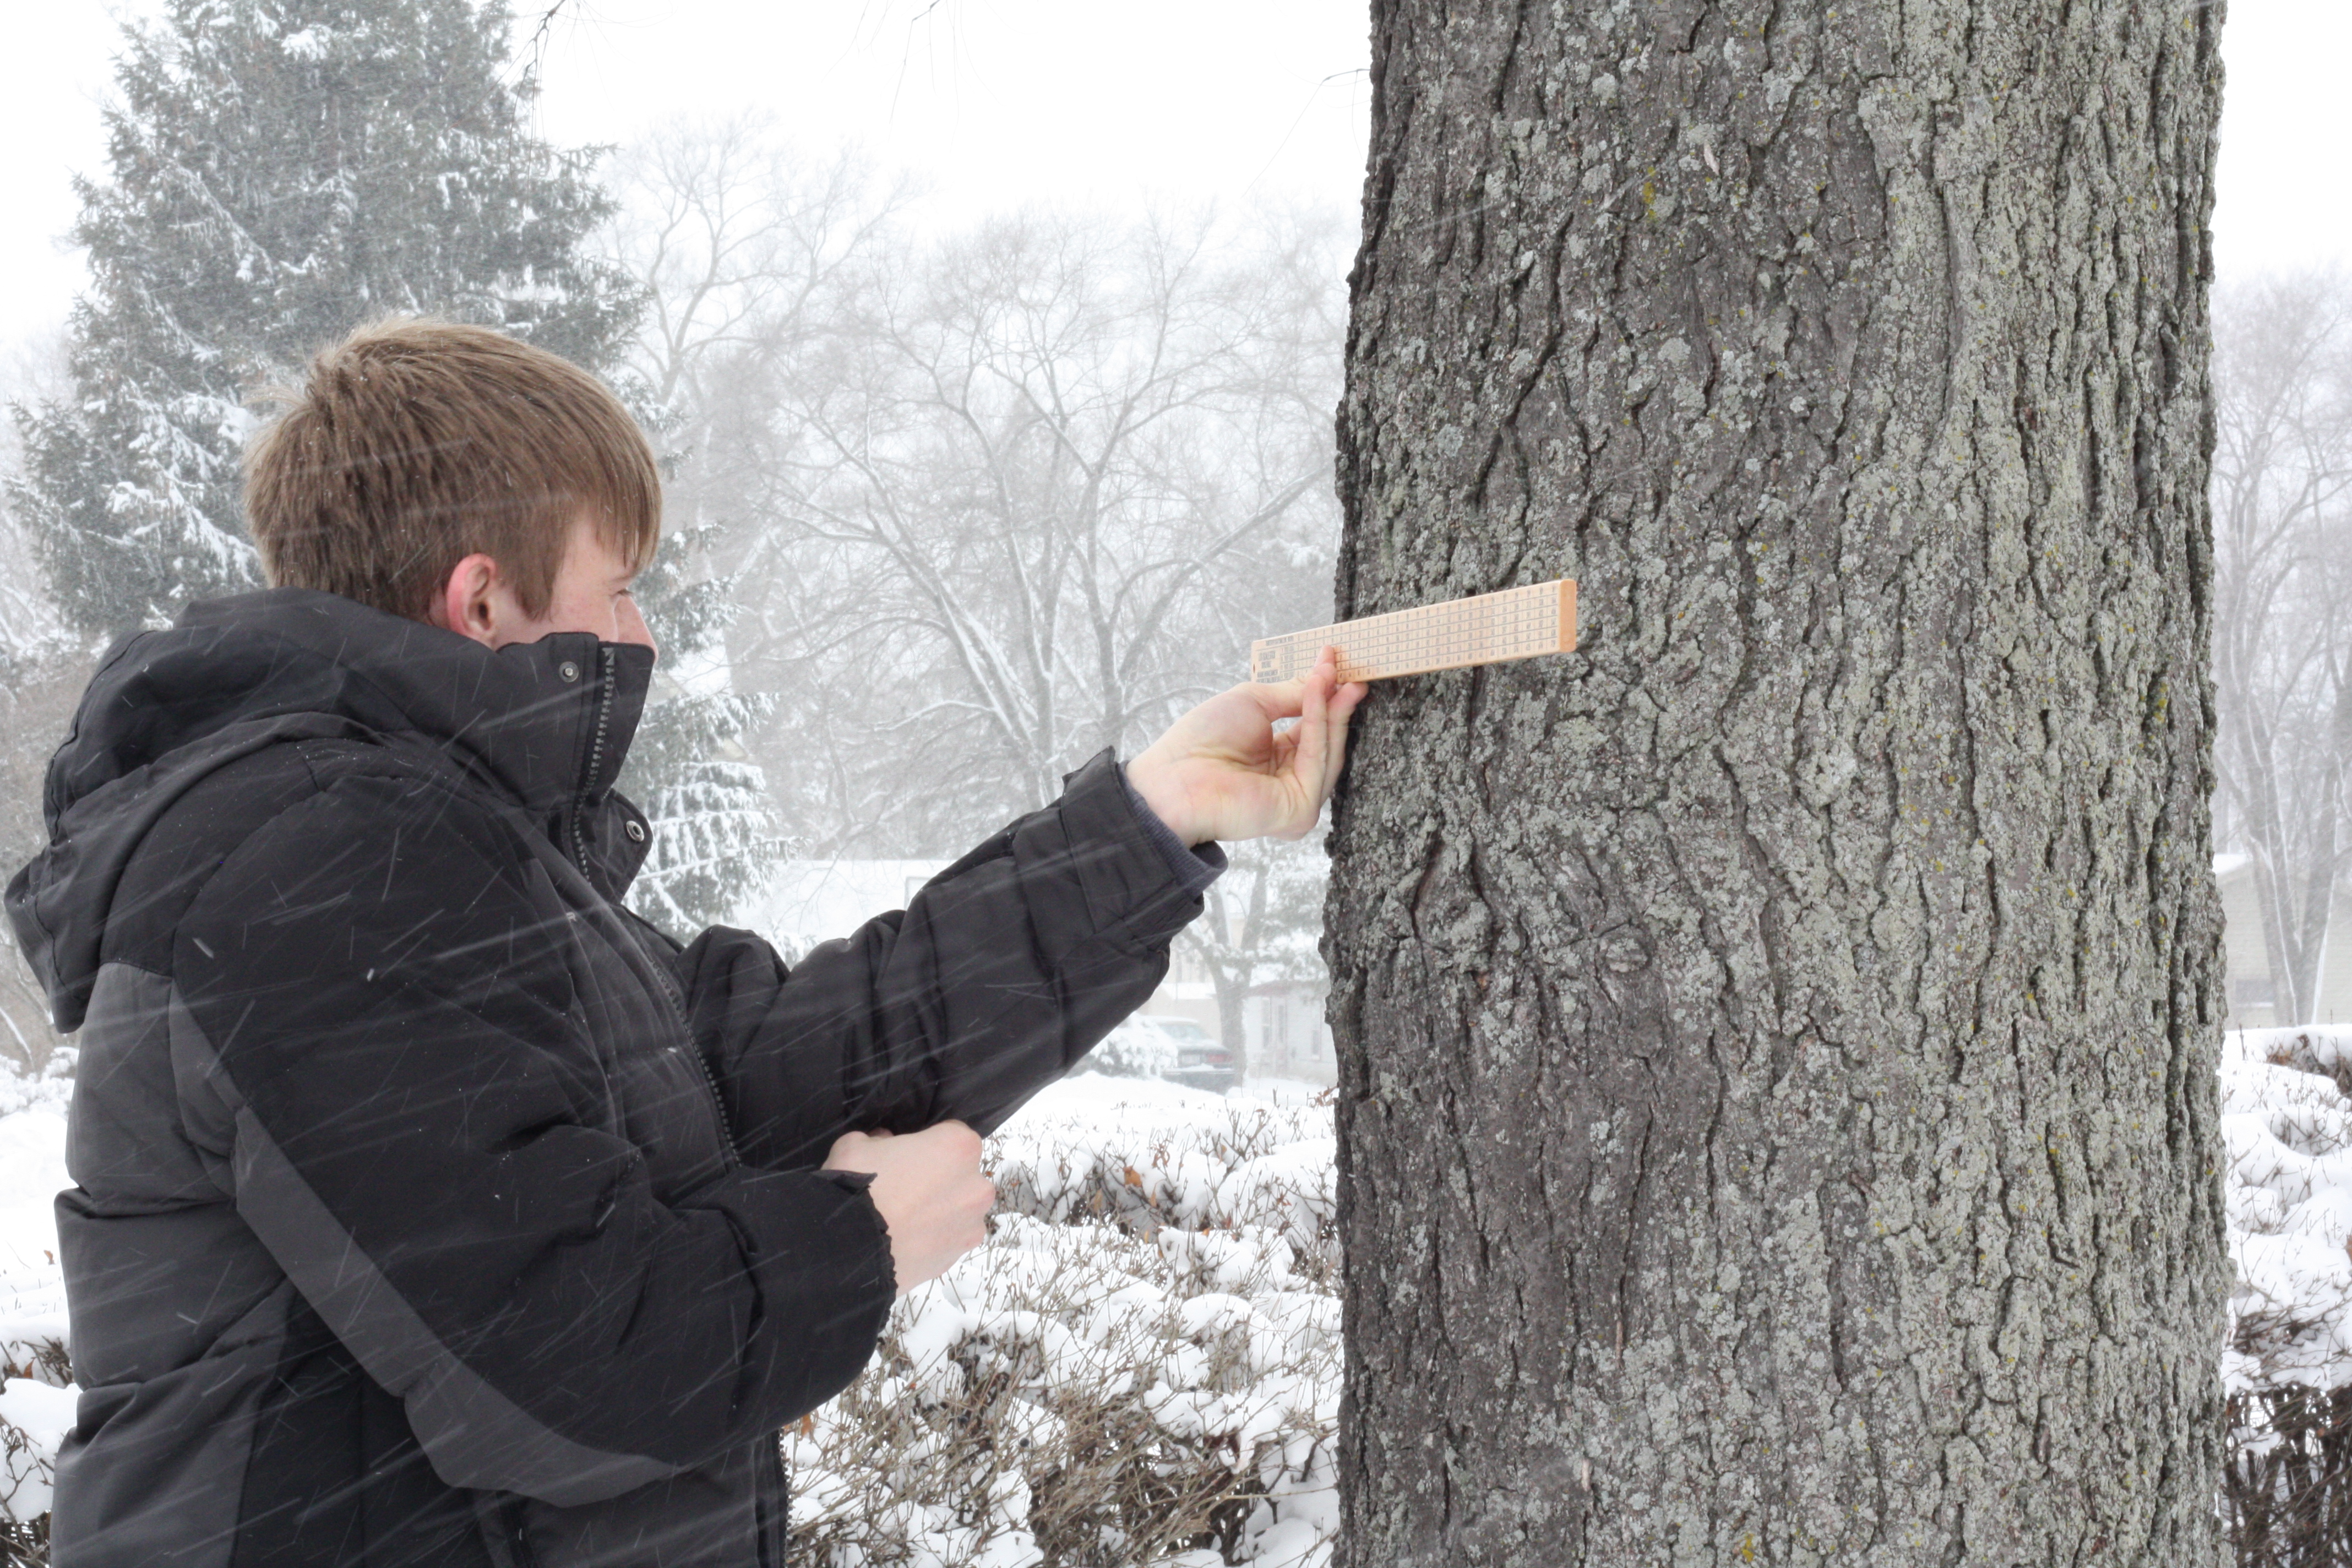 Boy measuring tree using Biltmore stick